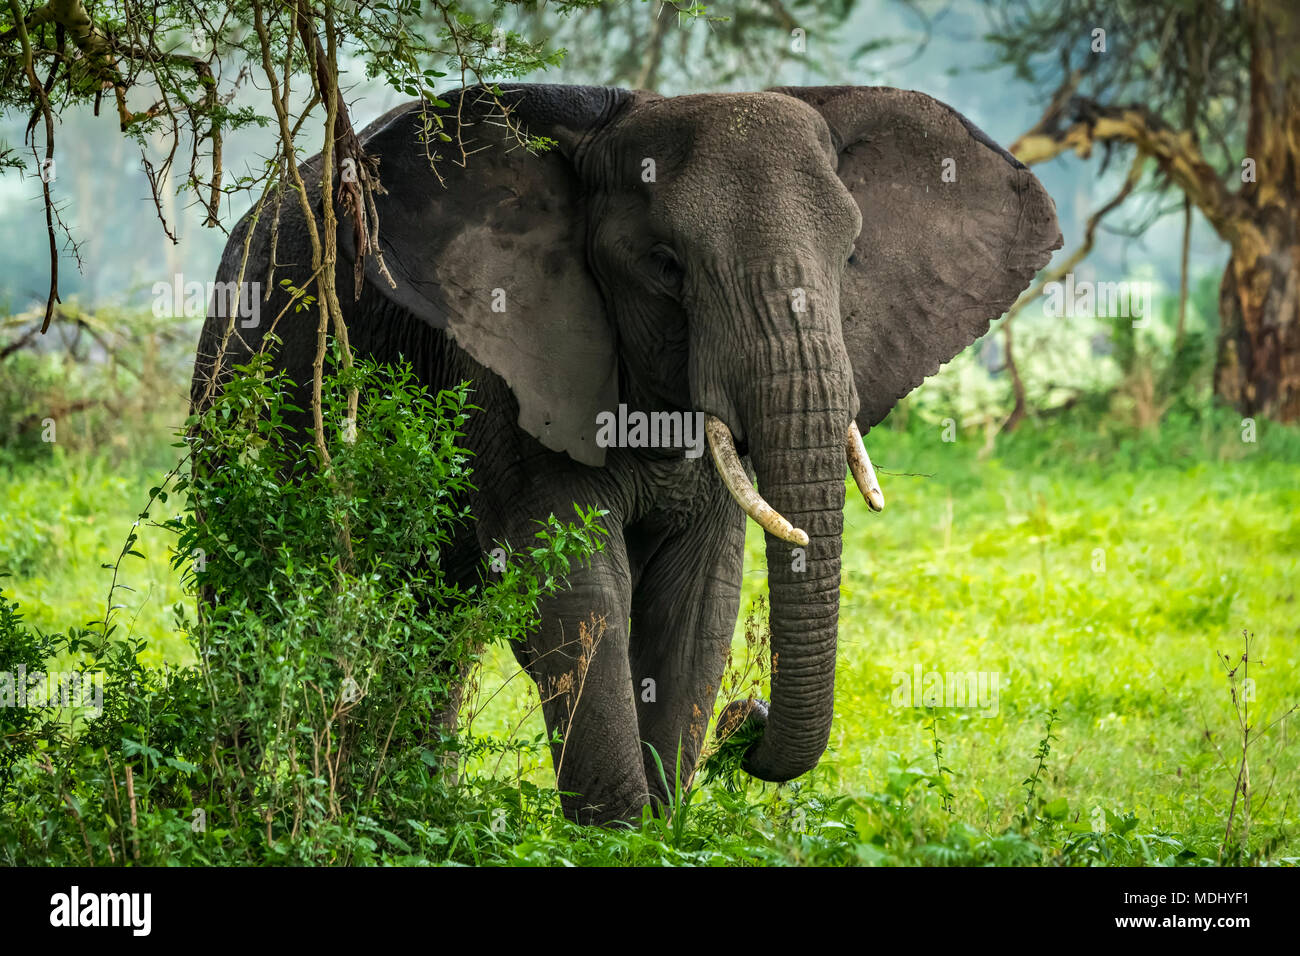 Elefante africano (Loxodonta africana) se recupera en la remoción de ramas frondosas, el cráter del Ngorongoro, Tanzania Foto de stock